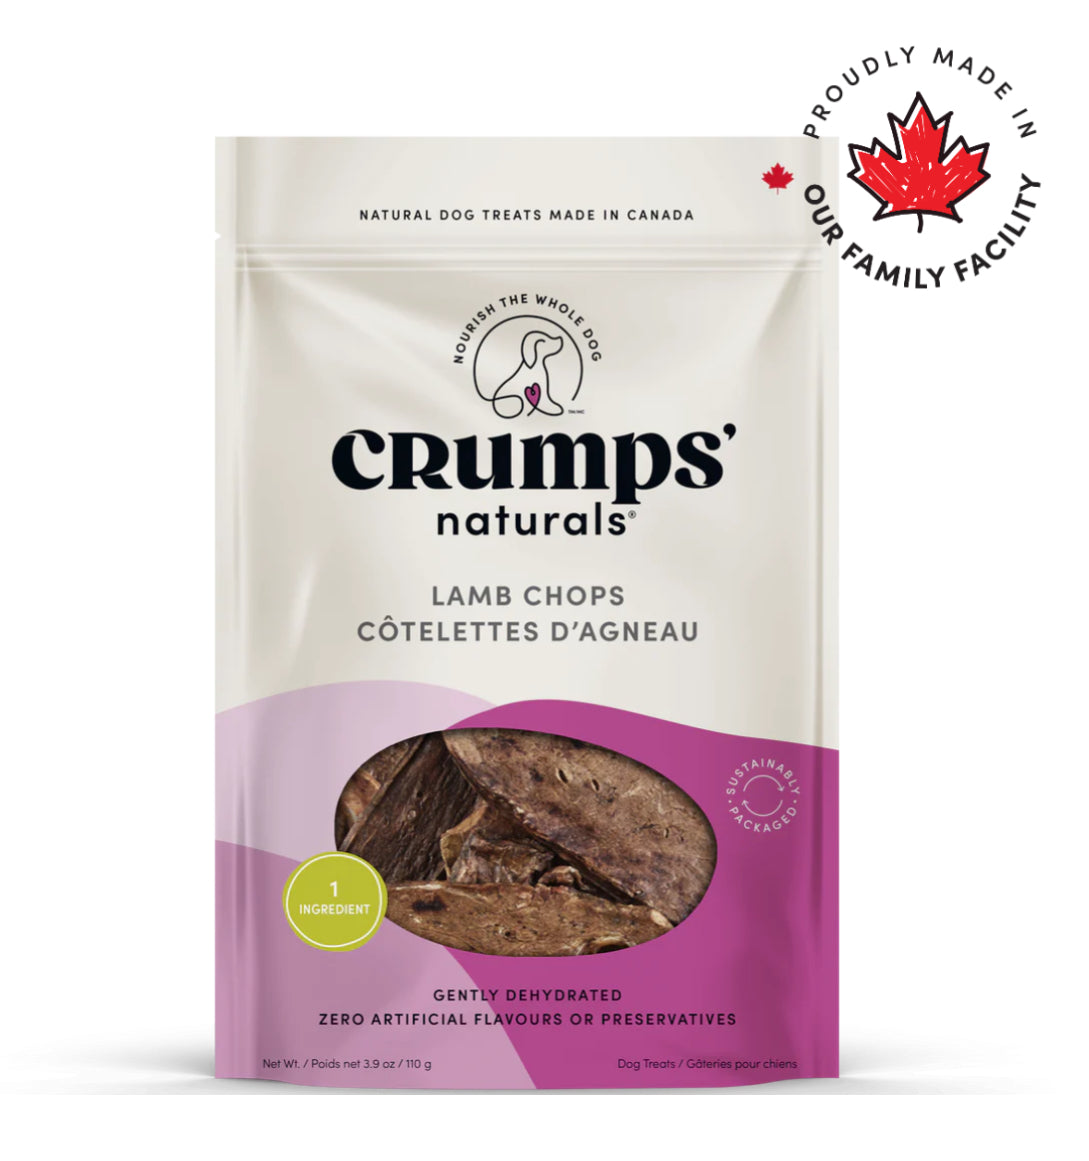 Crumps’ Naturals Lamb Chops